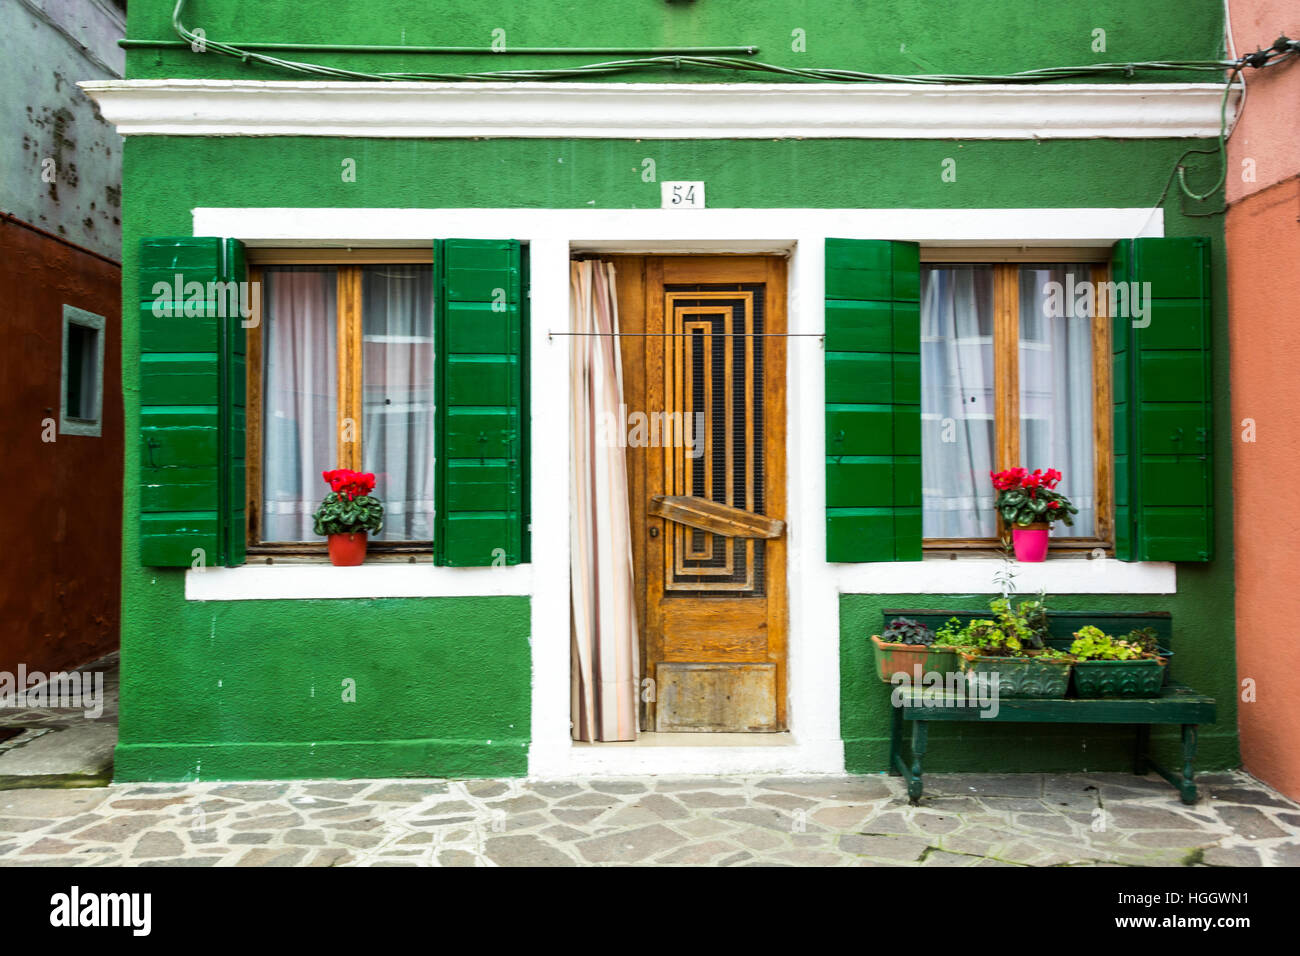 Green house, on Burano, Venice, Italy Stock Photo